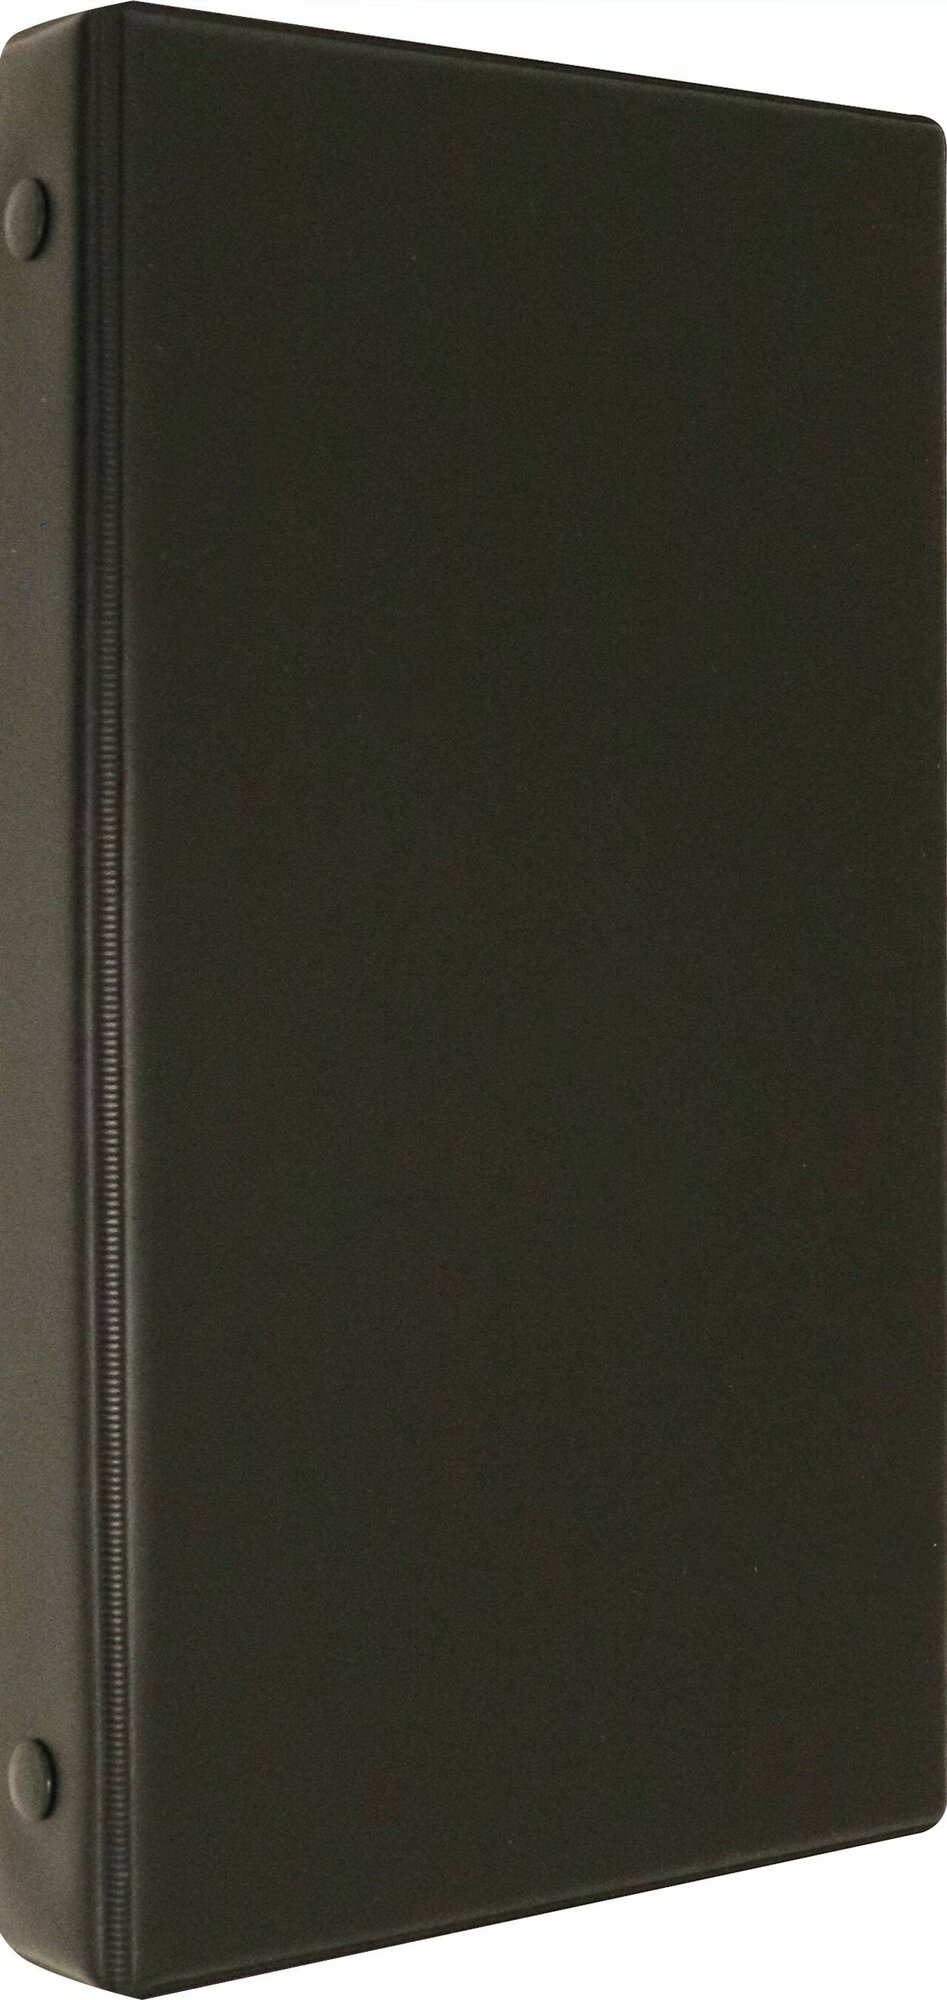 Визитница настольная на 96 визиток, черная (2441-01)